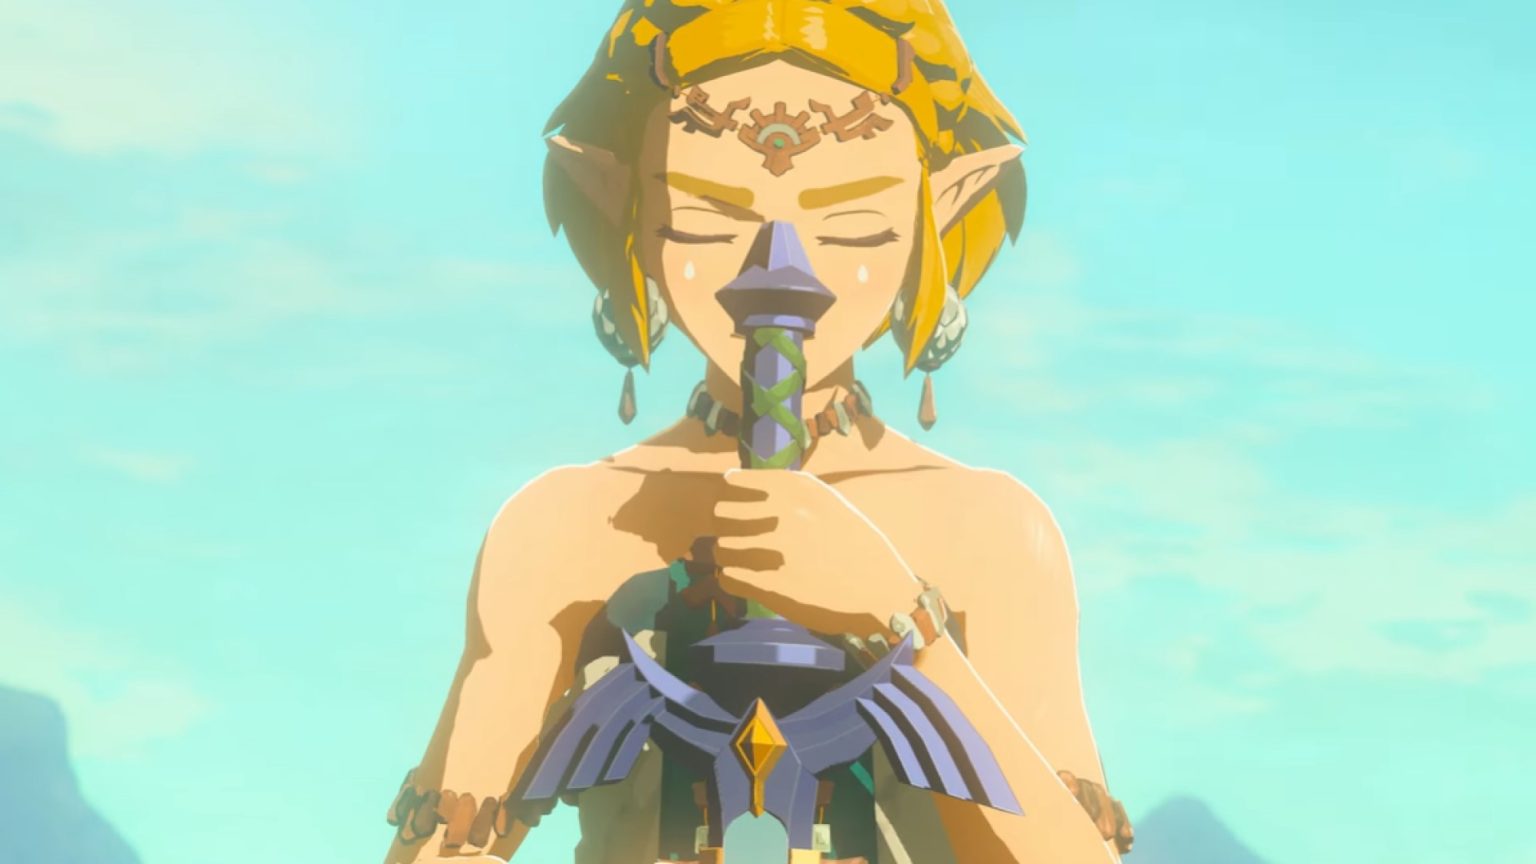 Voci di corridoio: Il gioco di The Legend of Zelda con Zelda come protagonista potrebbe essere in fase di sviluppo